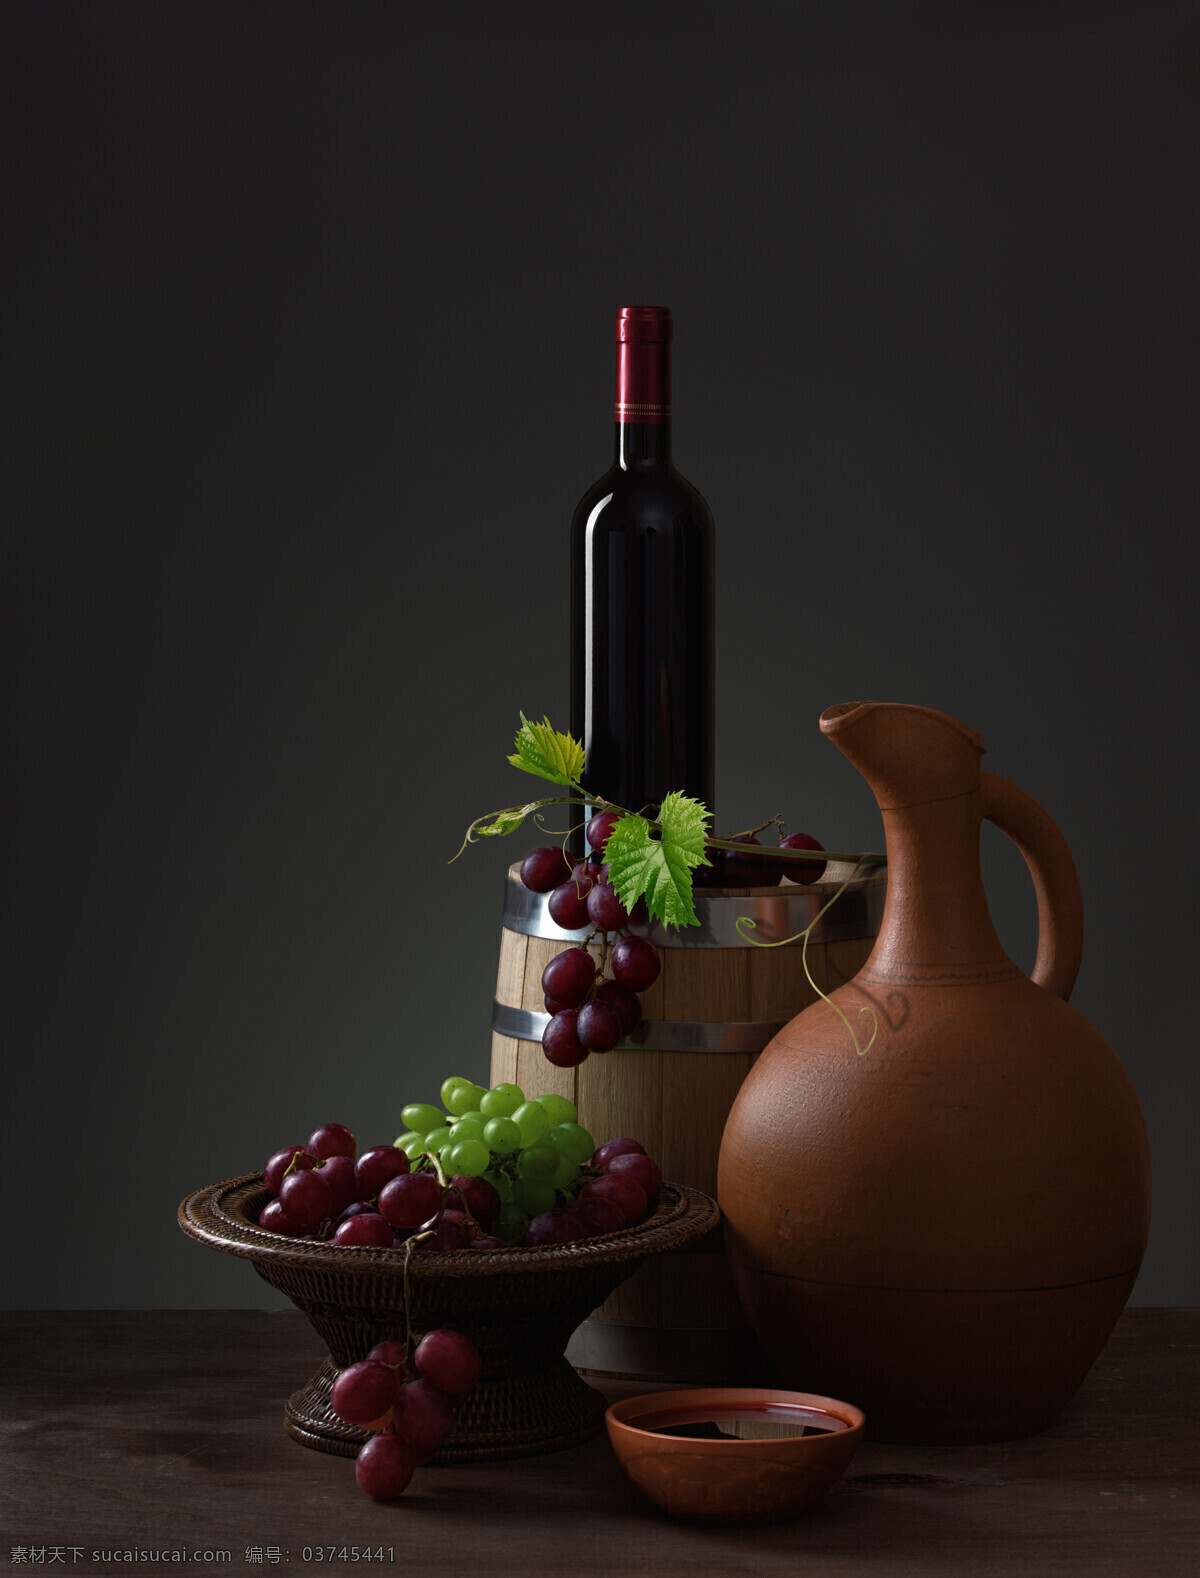 酒桶 葡萄酒 红酒 高脚杯 玻璃酒杯 酒瓶 红酒木桶 红酒摄影 红酒和葡萄 红酒特写 黑色